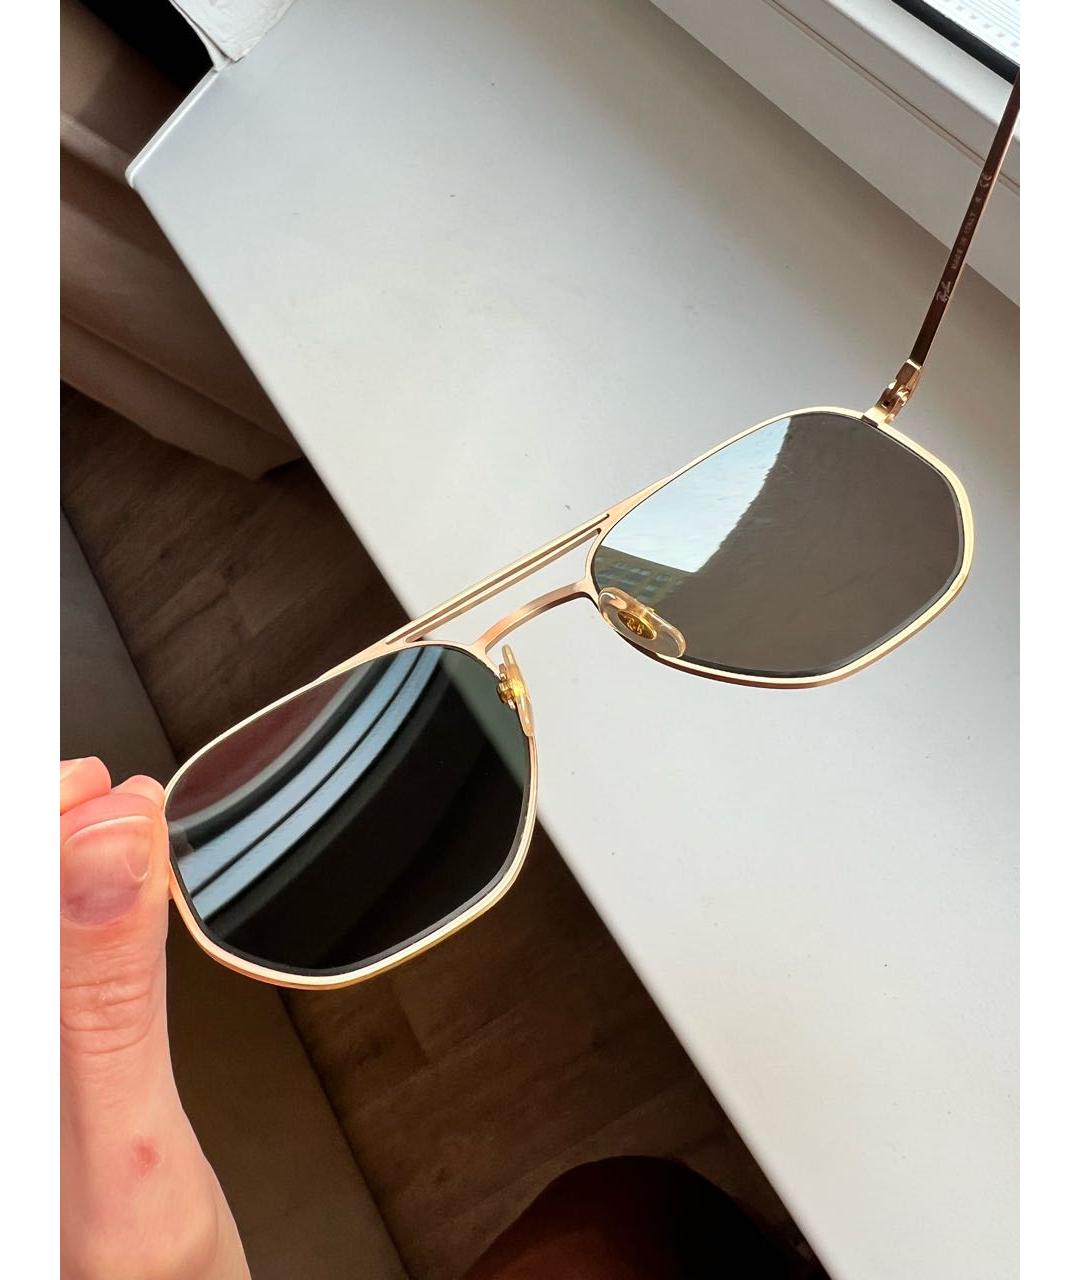 RAY BAN Золотые металлические солнцезащитные очки, фото 5